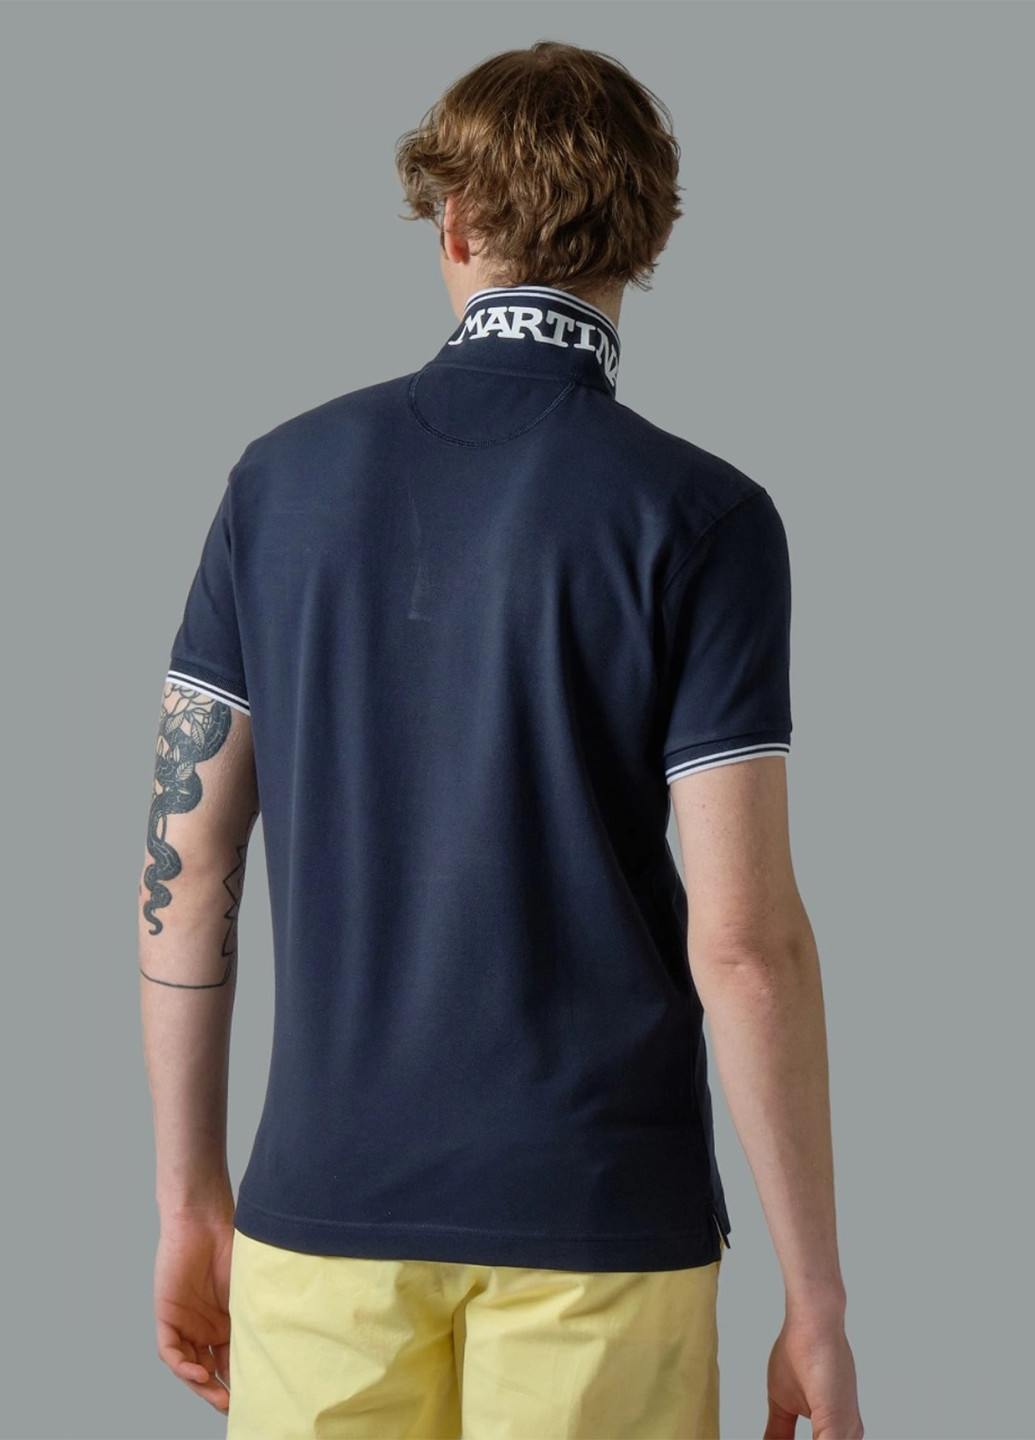 Темно-синяя футболка-поло для мужчин La Martina с логотипом